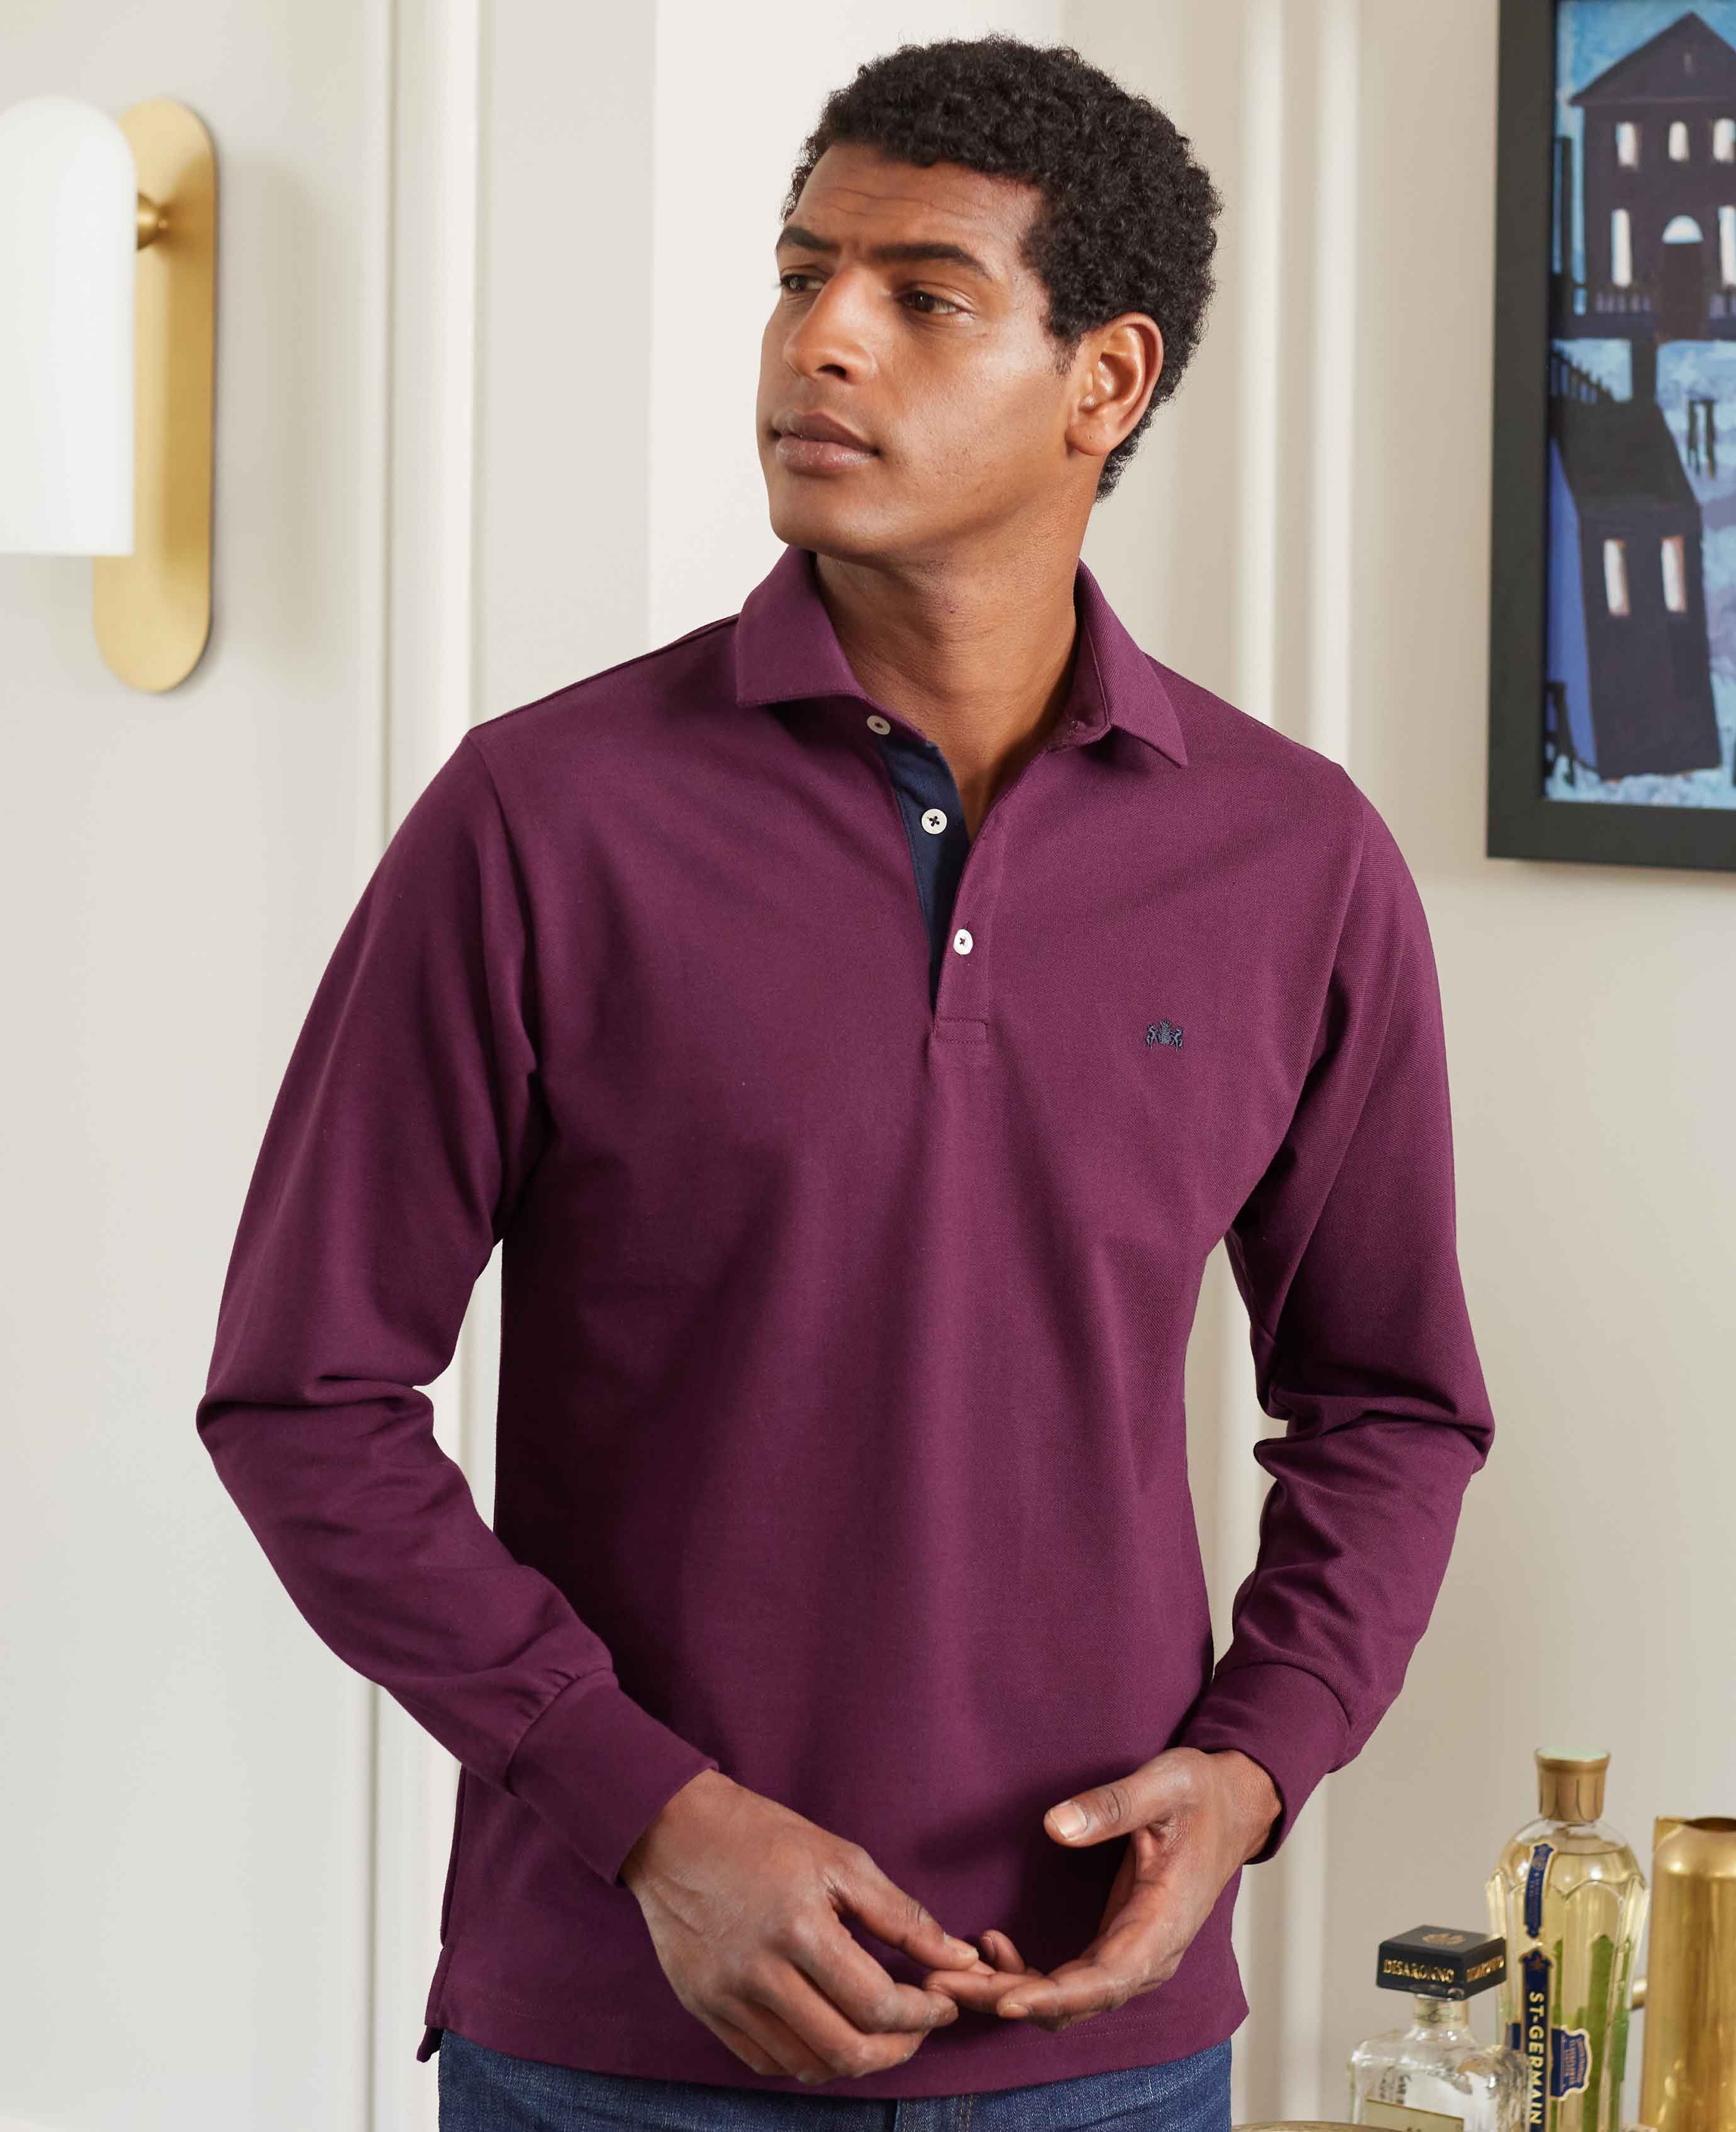 Long Sleeve Polo Shirt Plain 2 Button Collared Top Pique Cotton Mix Casual  Wear